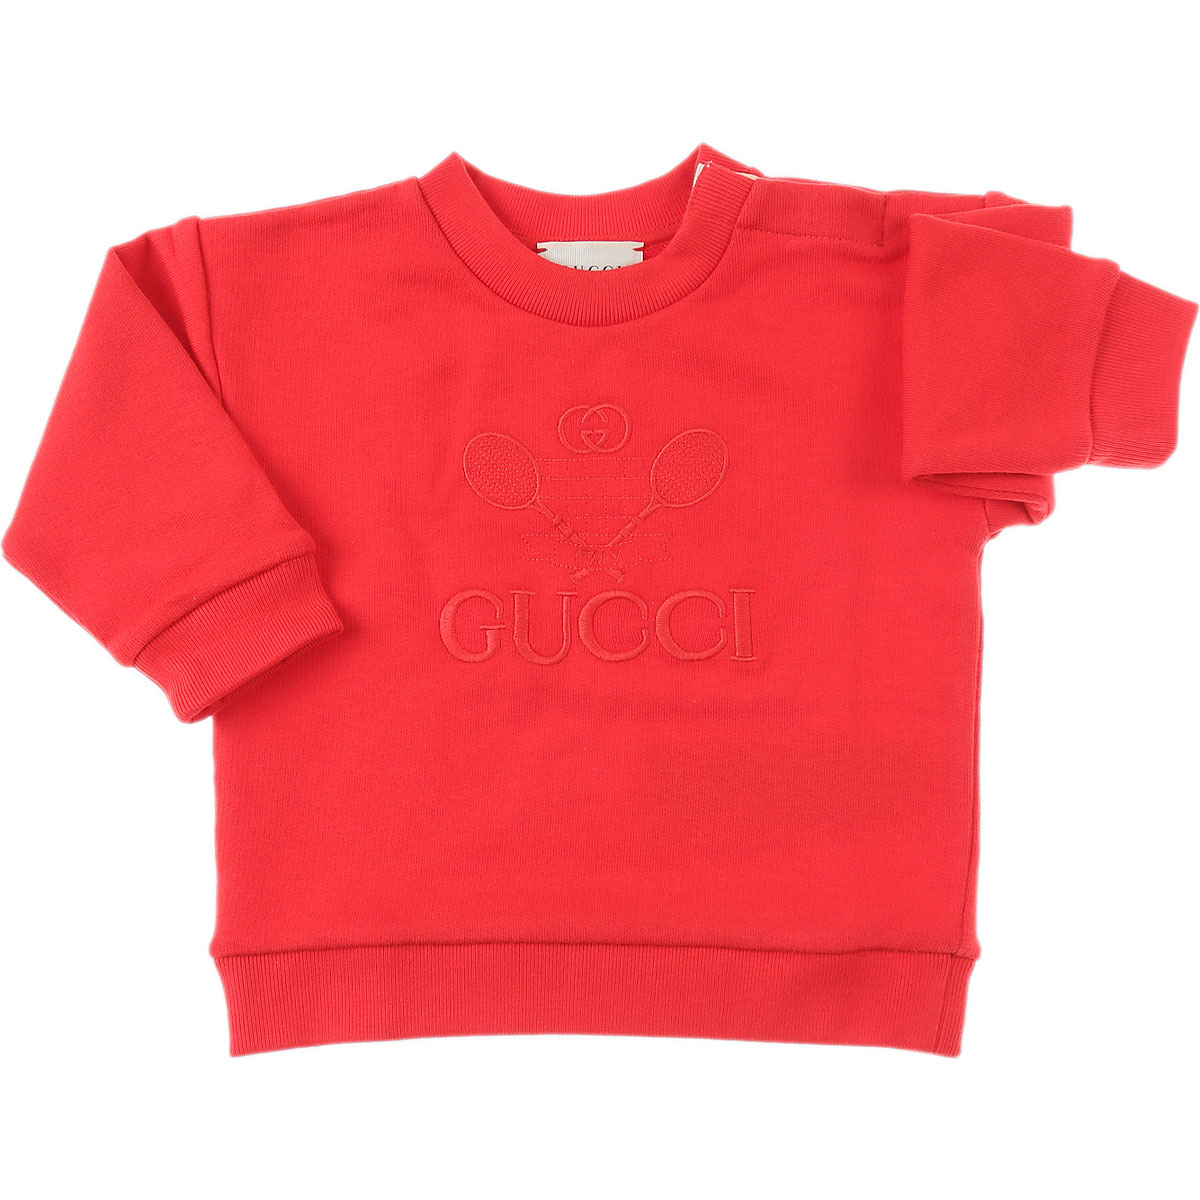 Gucci Baby Sweatshirt & Kapuzenpullover für Jungen Günstig im Sale, Rot, Baumwolle, 2017, 18M 3M 3Y 9M